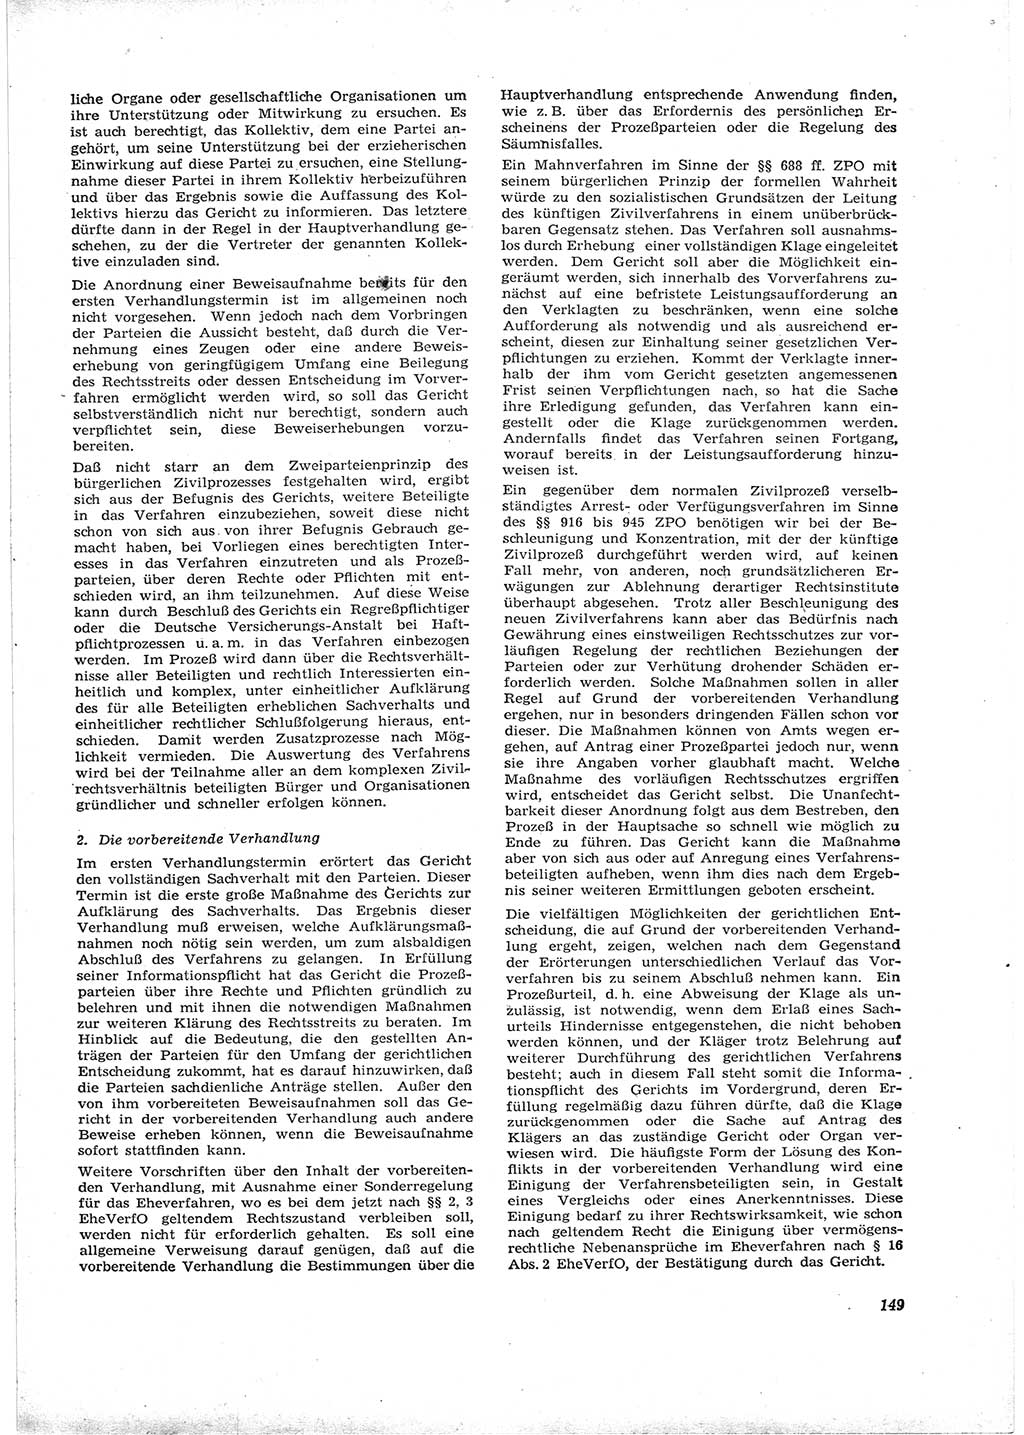 Neue Justiz (NJ), Zeitschrift für Recht und Rechtswissenschaft [Deutsche Demokratische Republik (DDR)], 16. Jahrgang 1962, Seite 149 (NJ DDR 1962, S. 149)